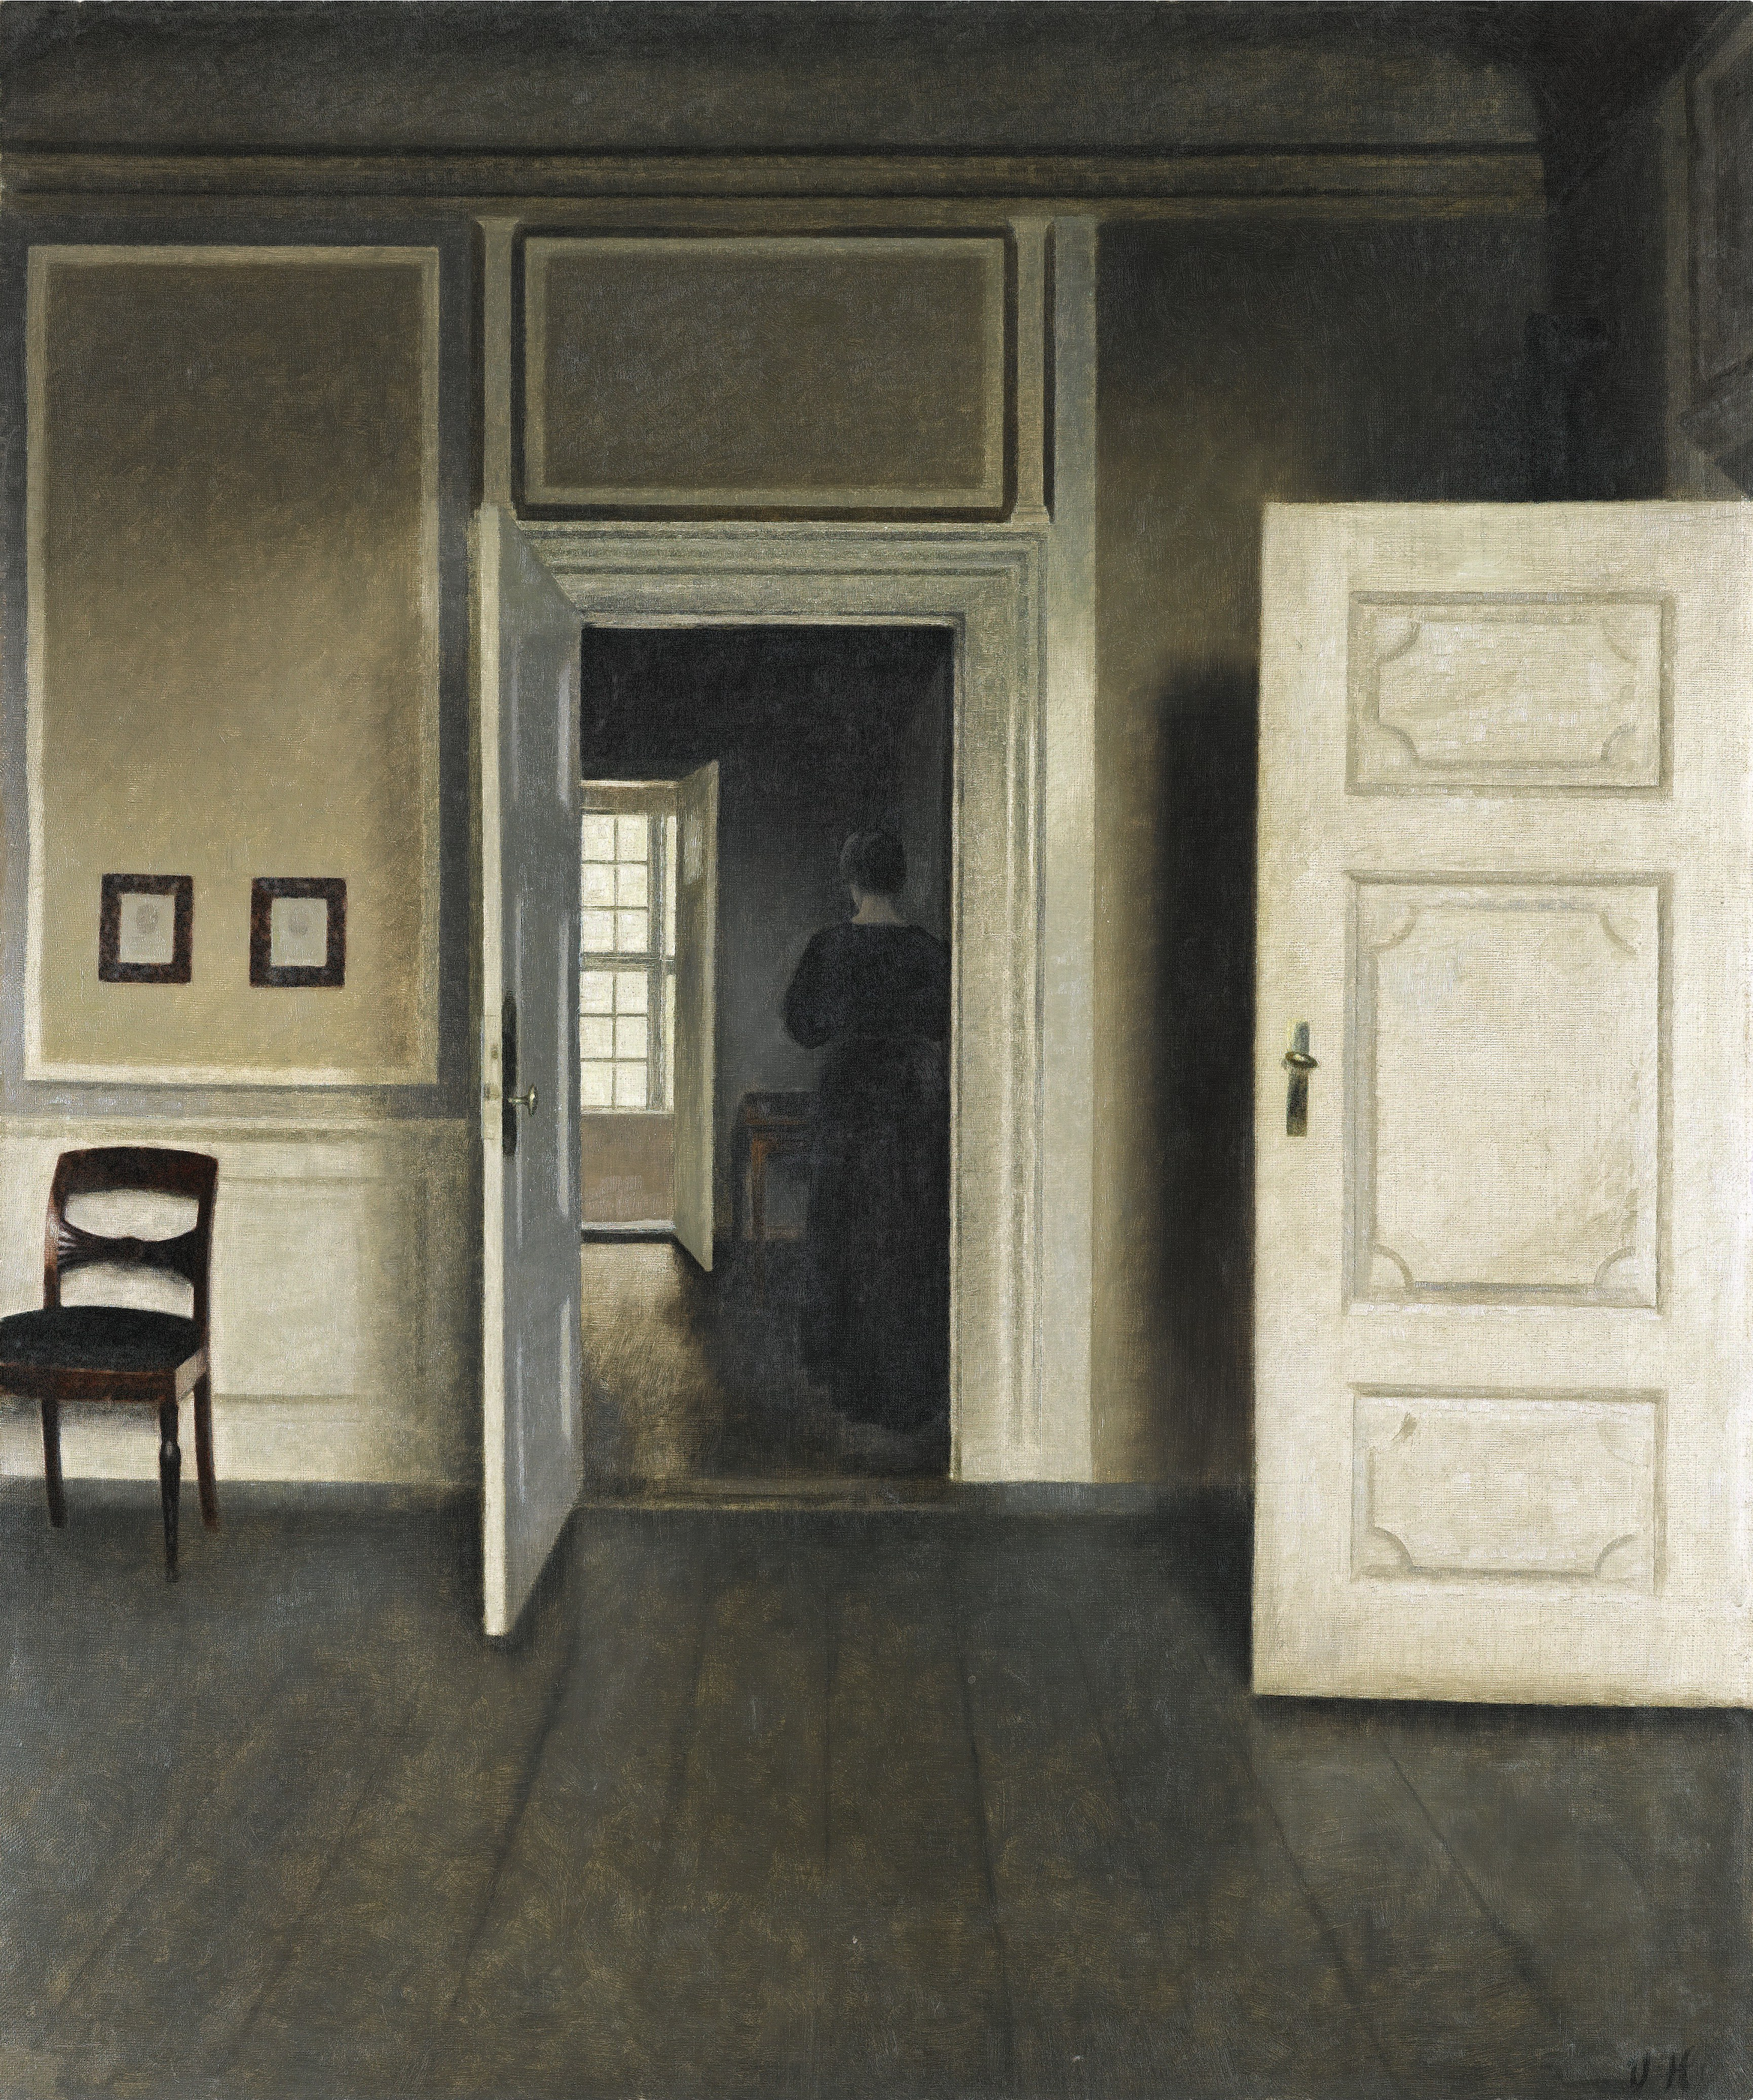 室内、ストランゲーゼ30番地 by Vilhelm Hammershøi - 1901年 - 66.0 x 55.0 cm 